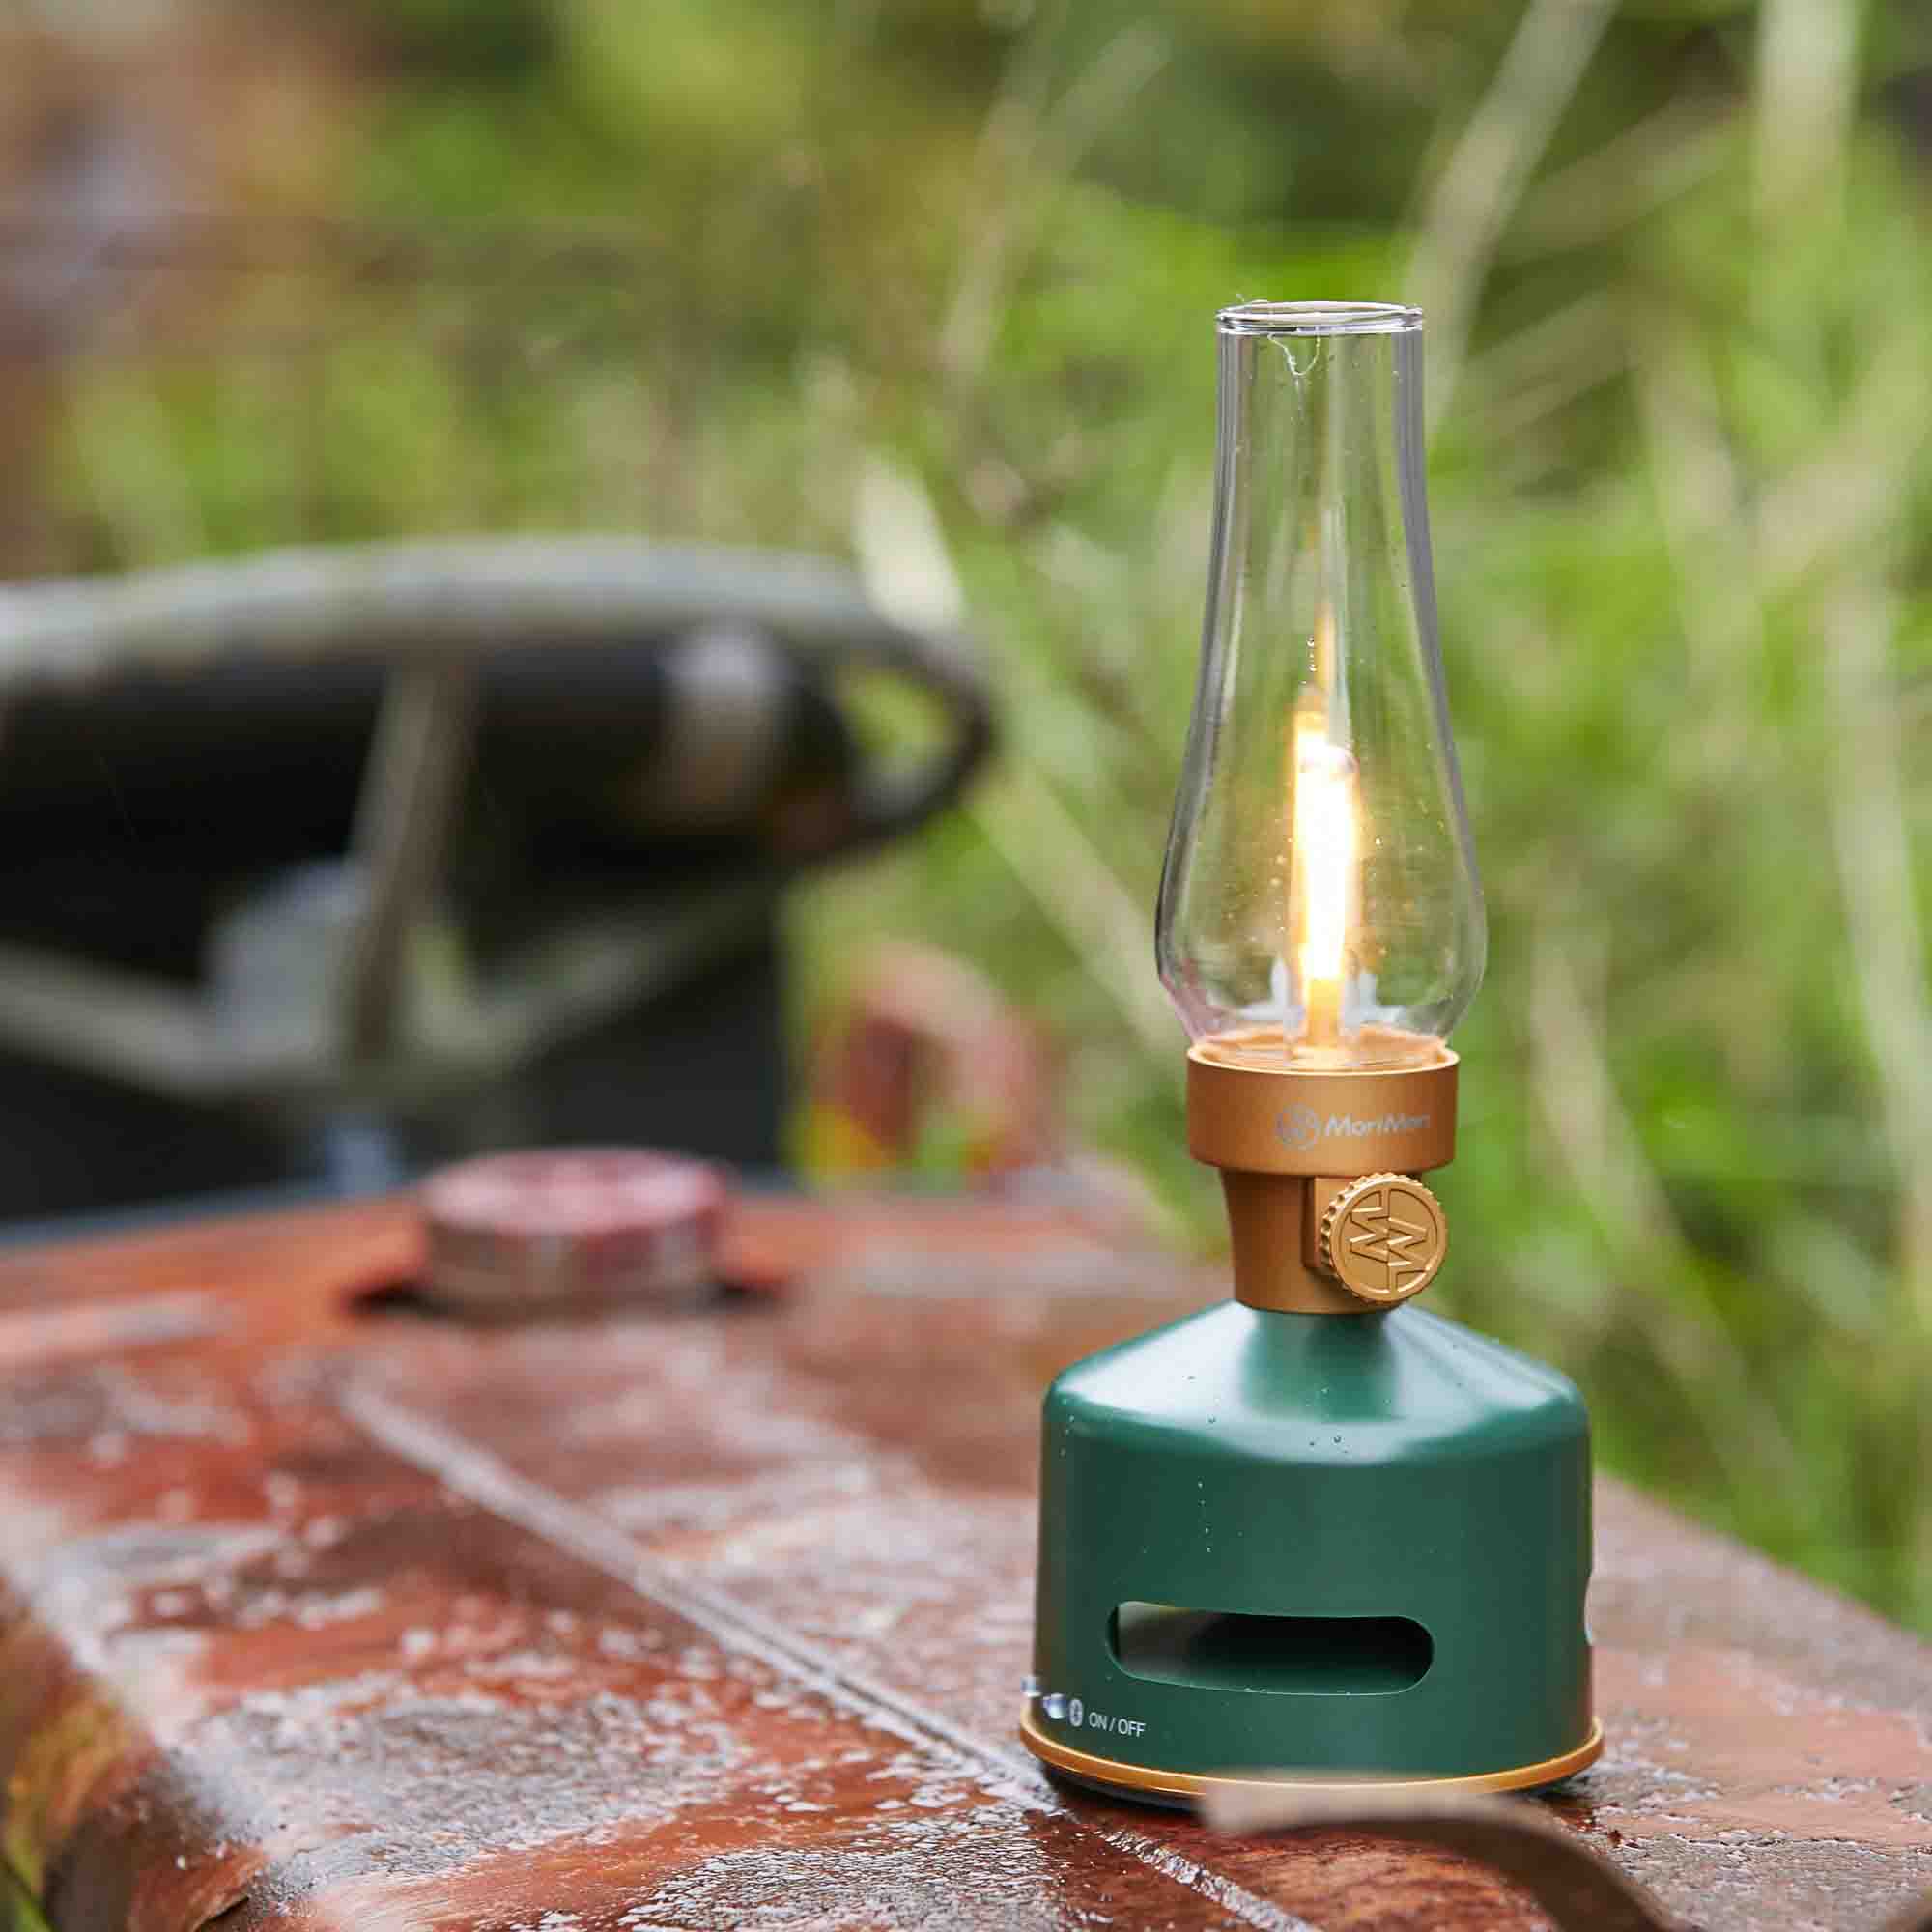 MoriMori LED Lantern & Bluetooth Speaker Original Green│Buitenverlichting Oplaadbaar│art. FLS-2101-DG│op oude tractor met licht aan